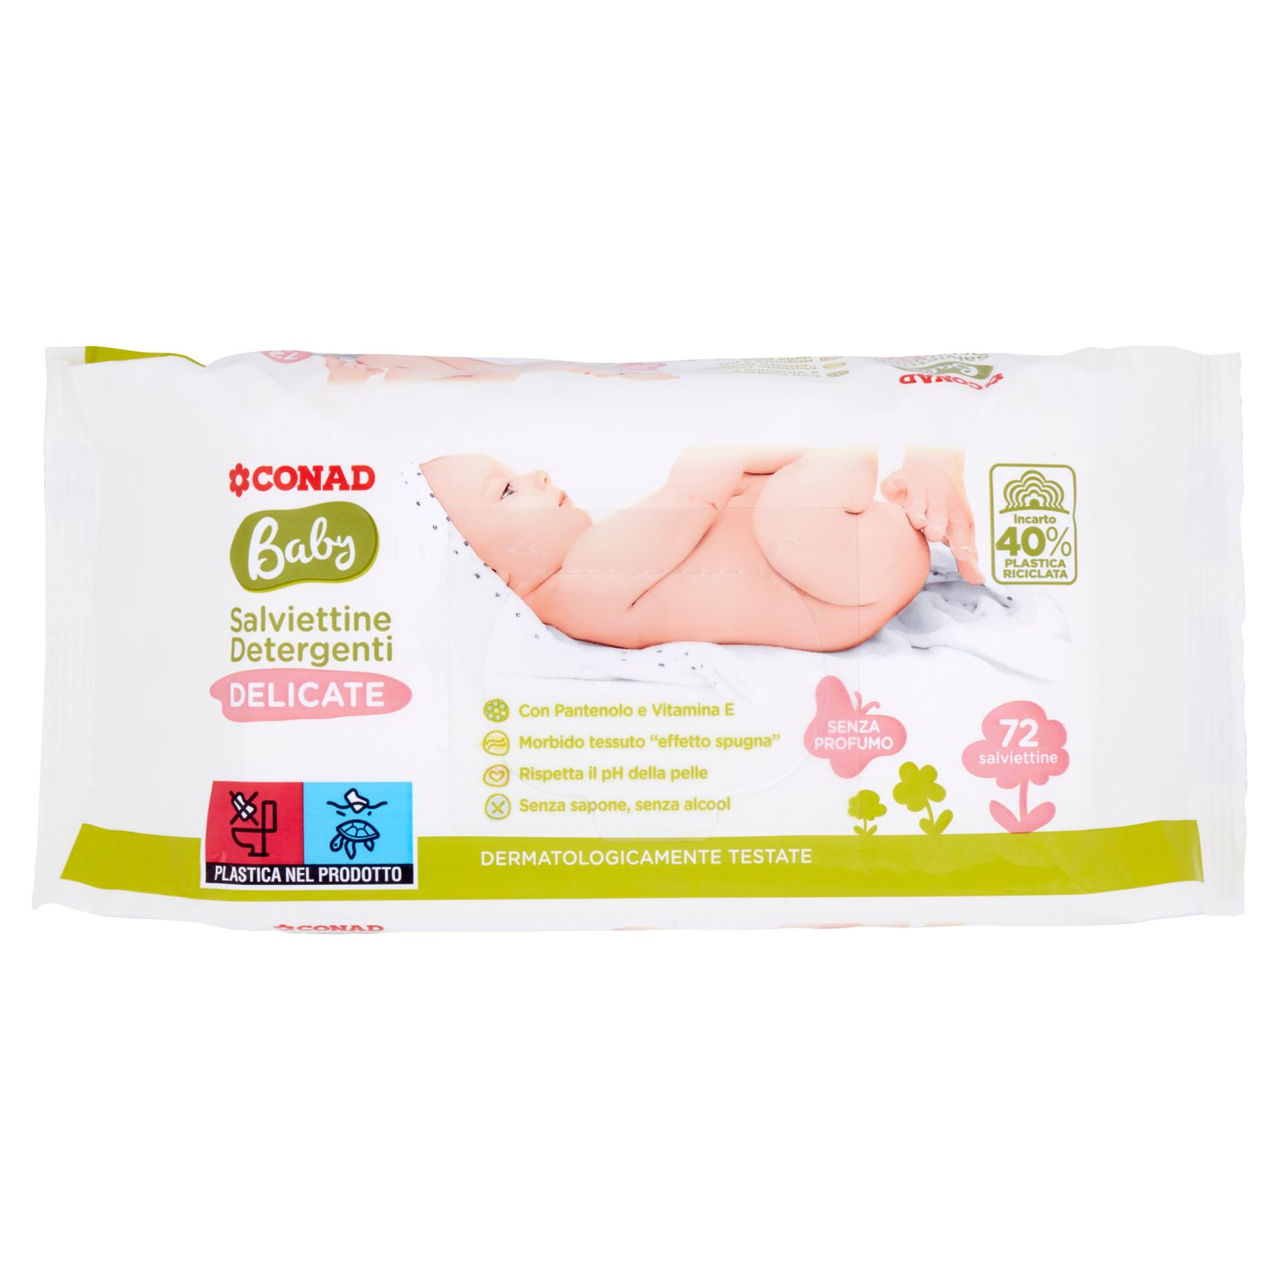 Baby Salviettine Detergenti Delicate Conad online